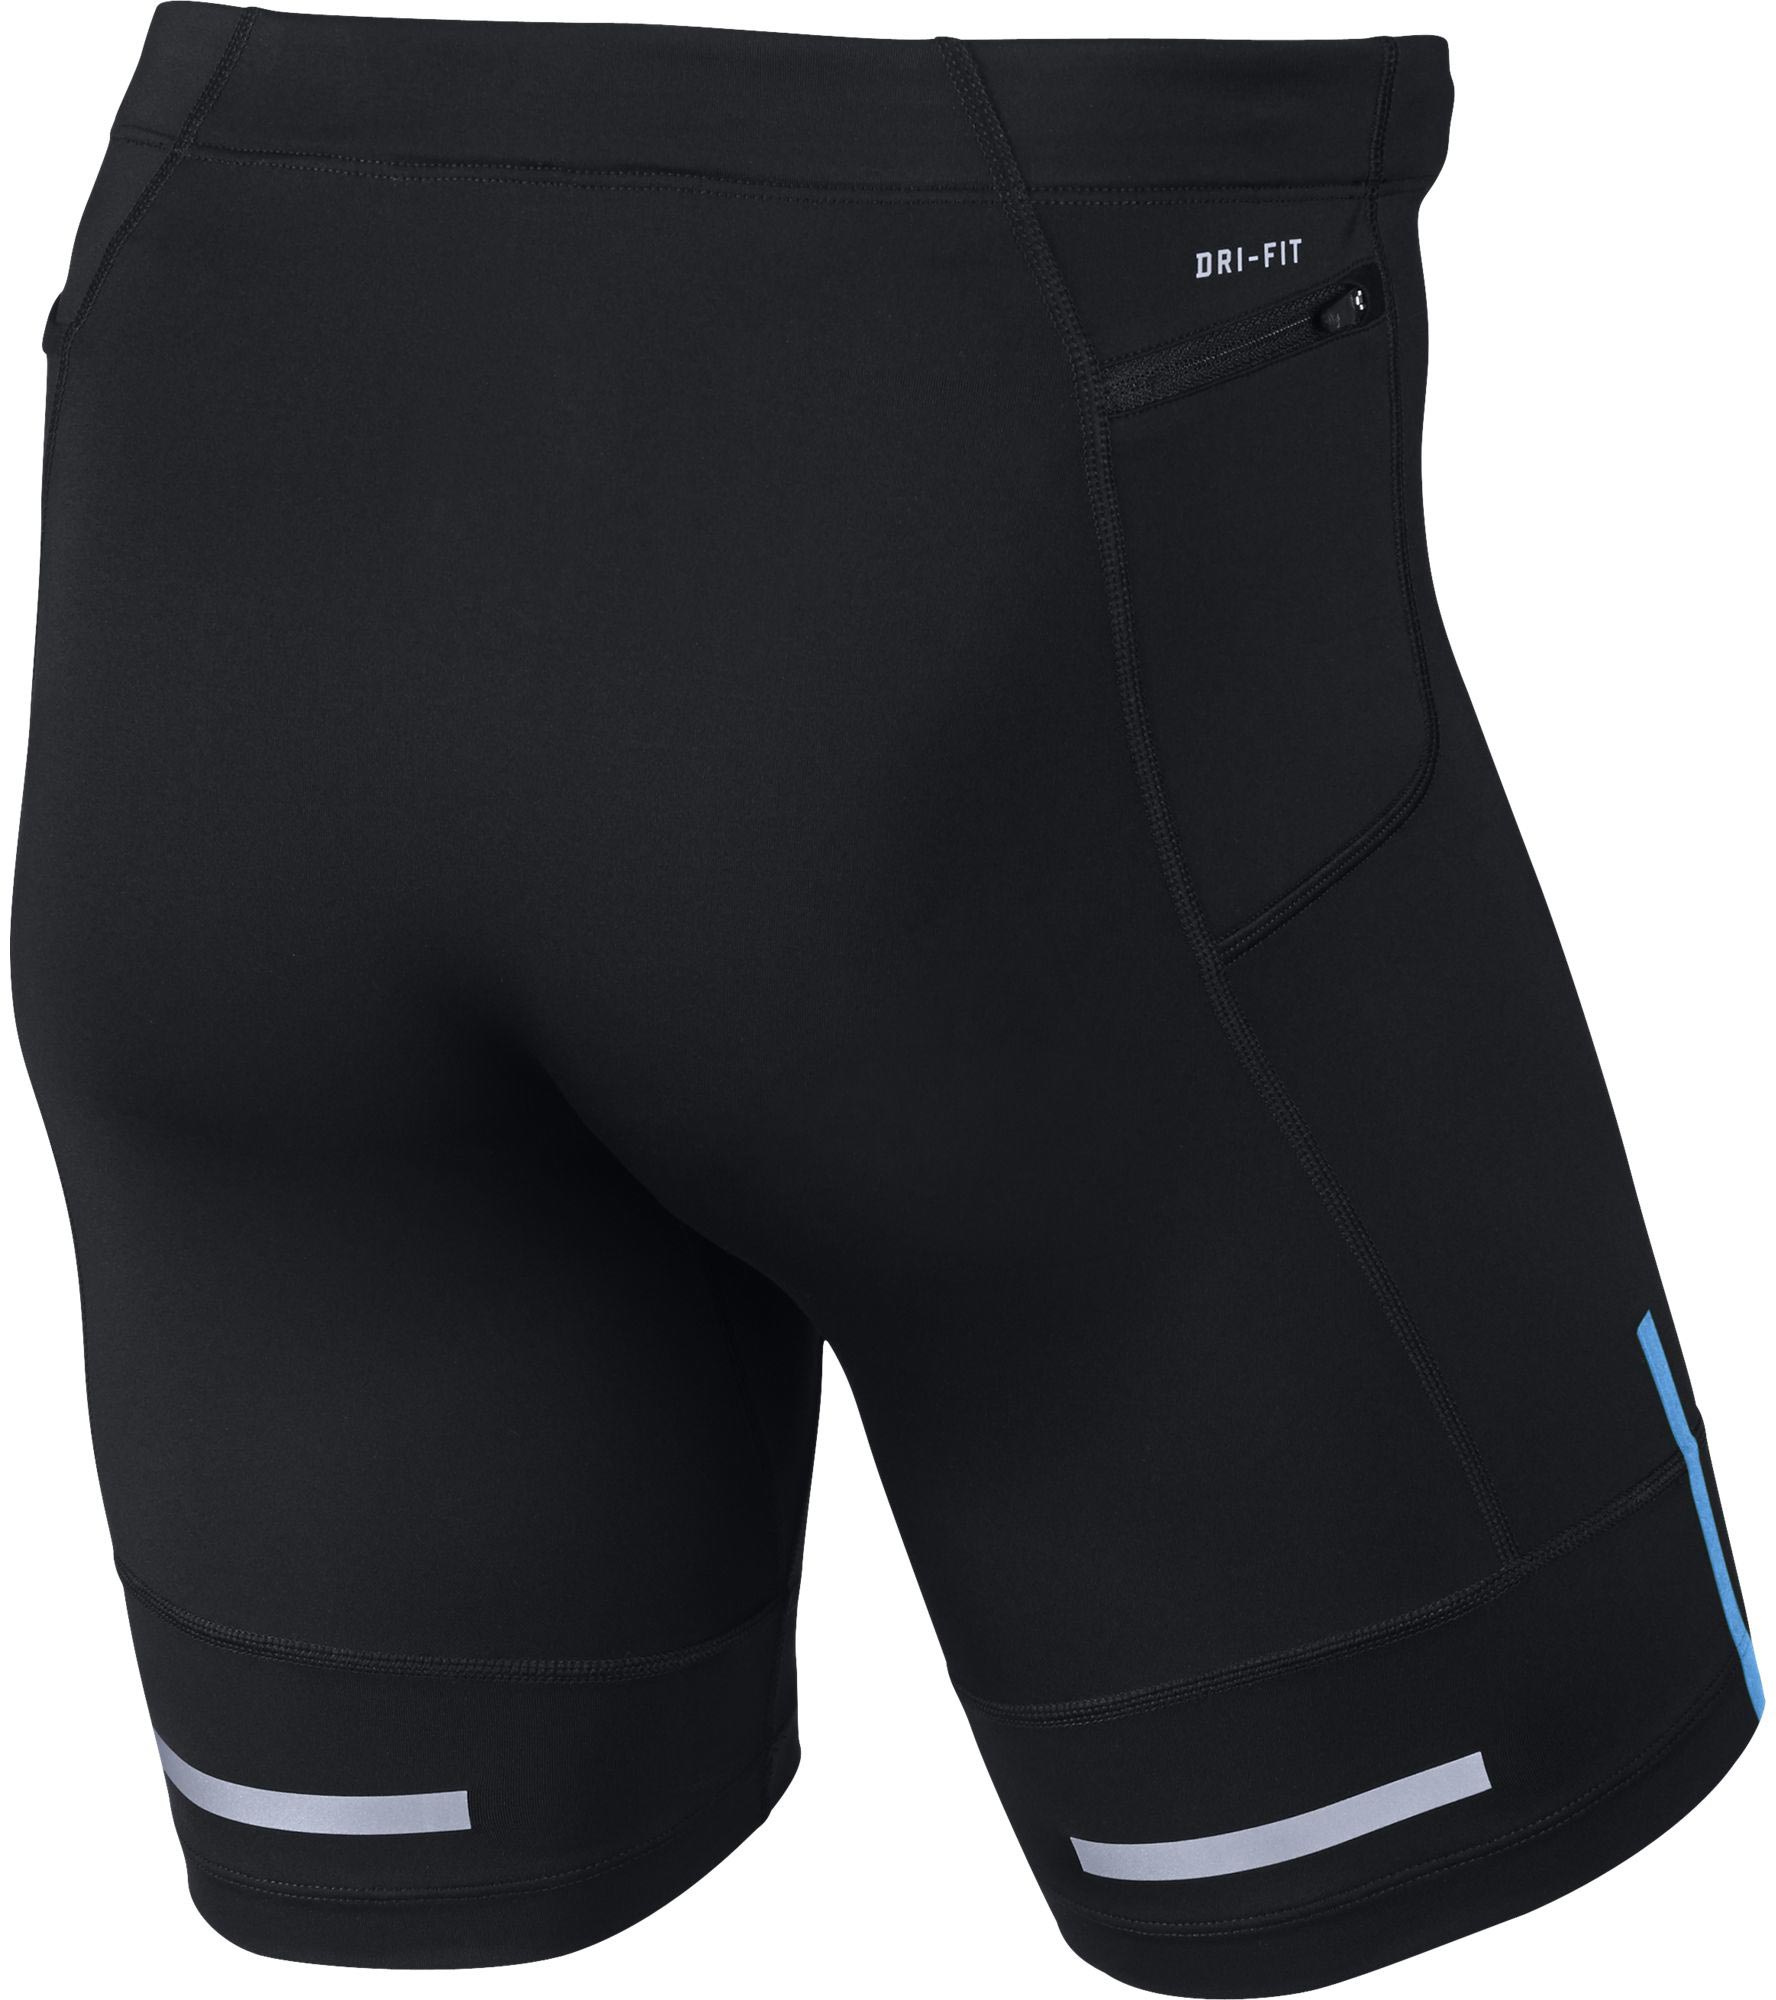 Men's jogging shorts